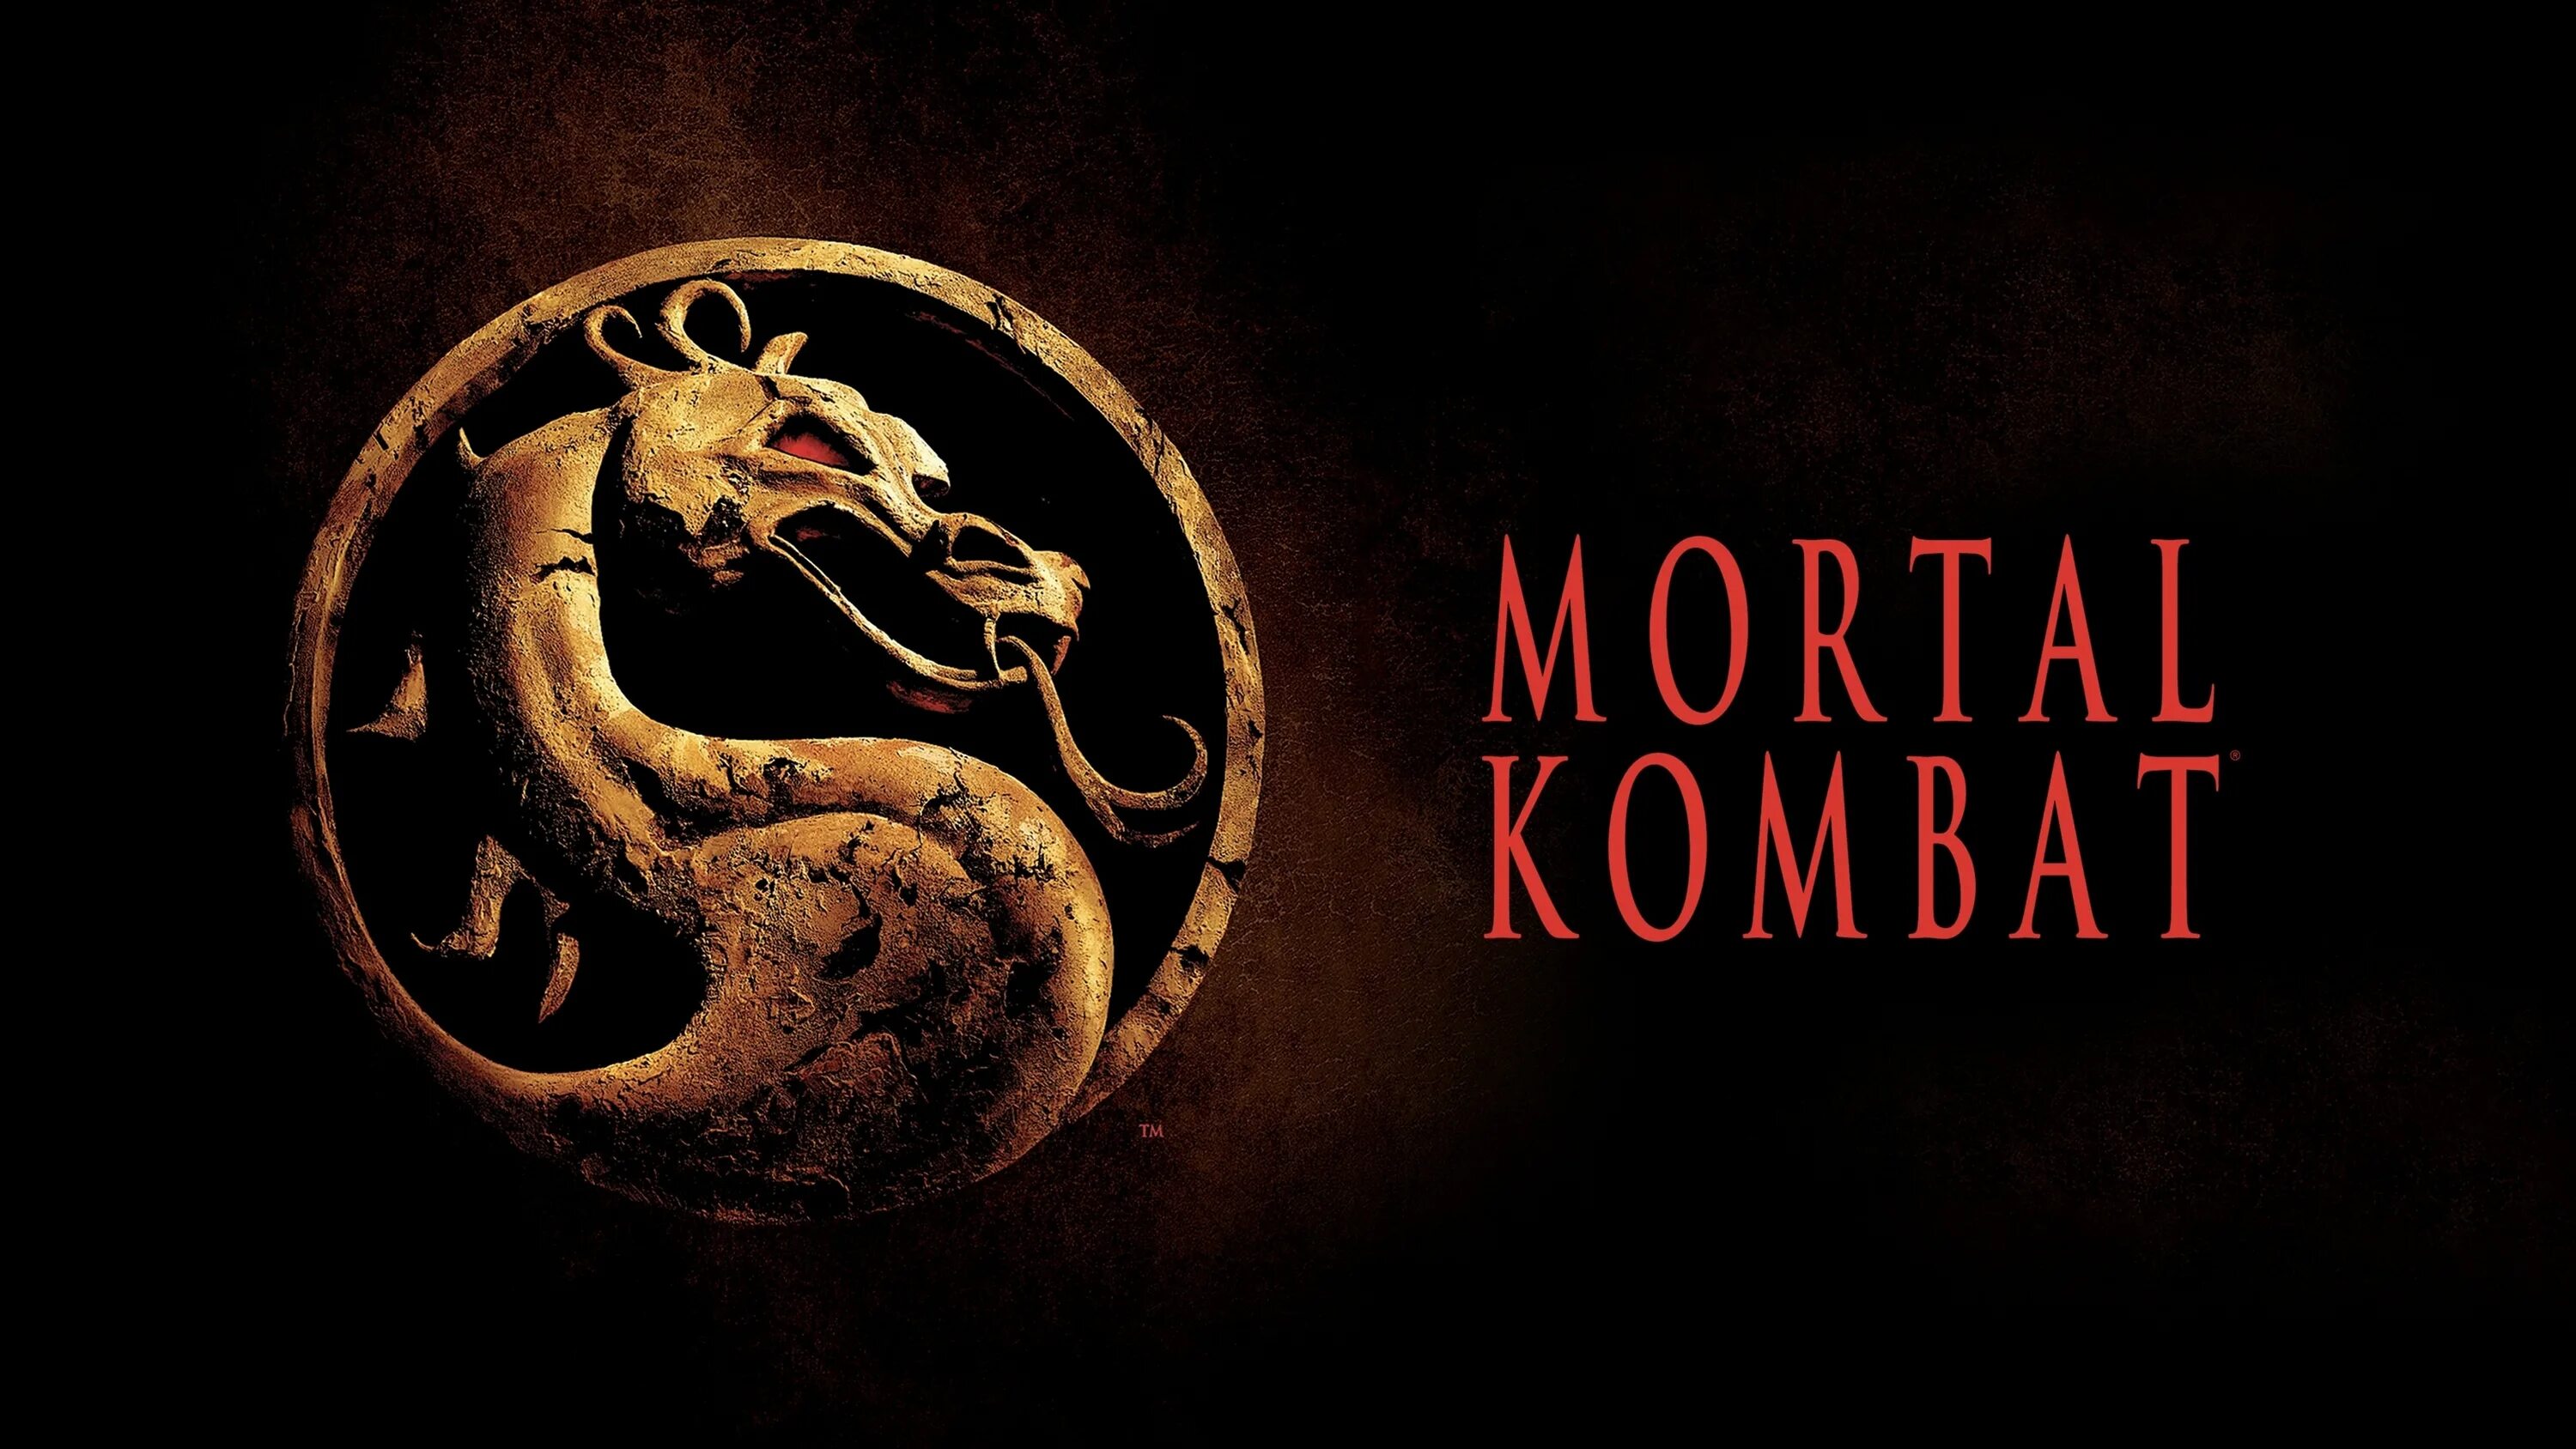 Мортал комбат музыка. Mortal Kombat 2021 фильм обложка. Мортал комбат дракон 1995. Смертельная битва Mortal Kombat 1995 Постер. Mortal Kombat 1995 обложка.